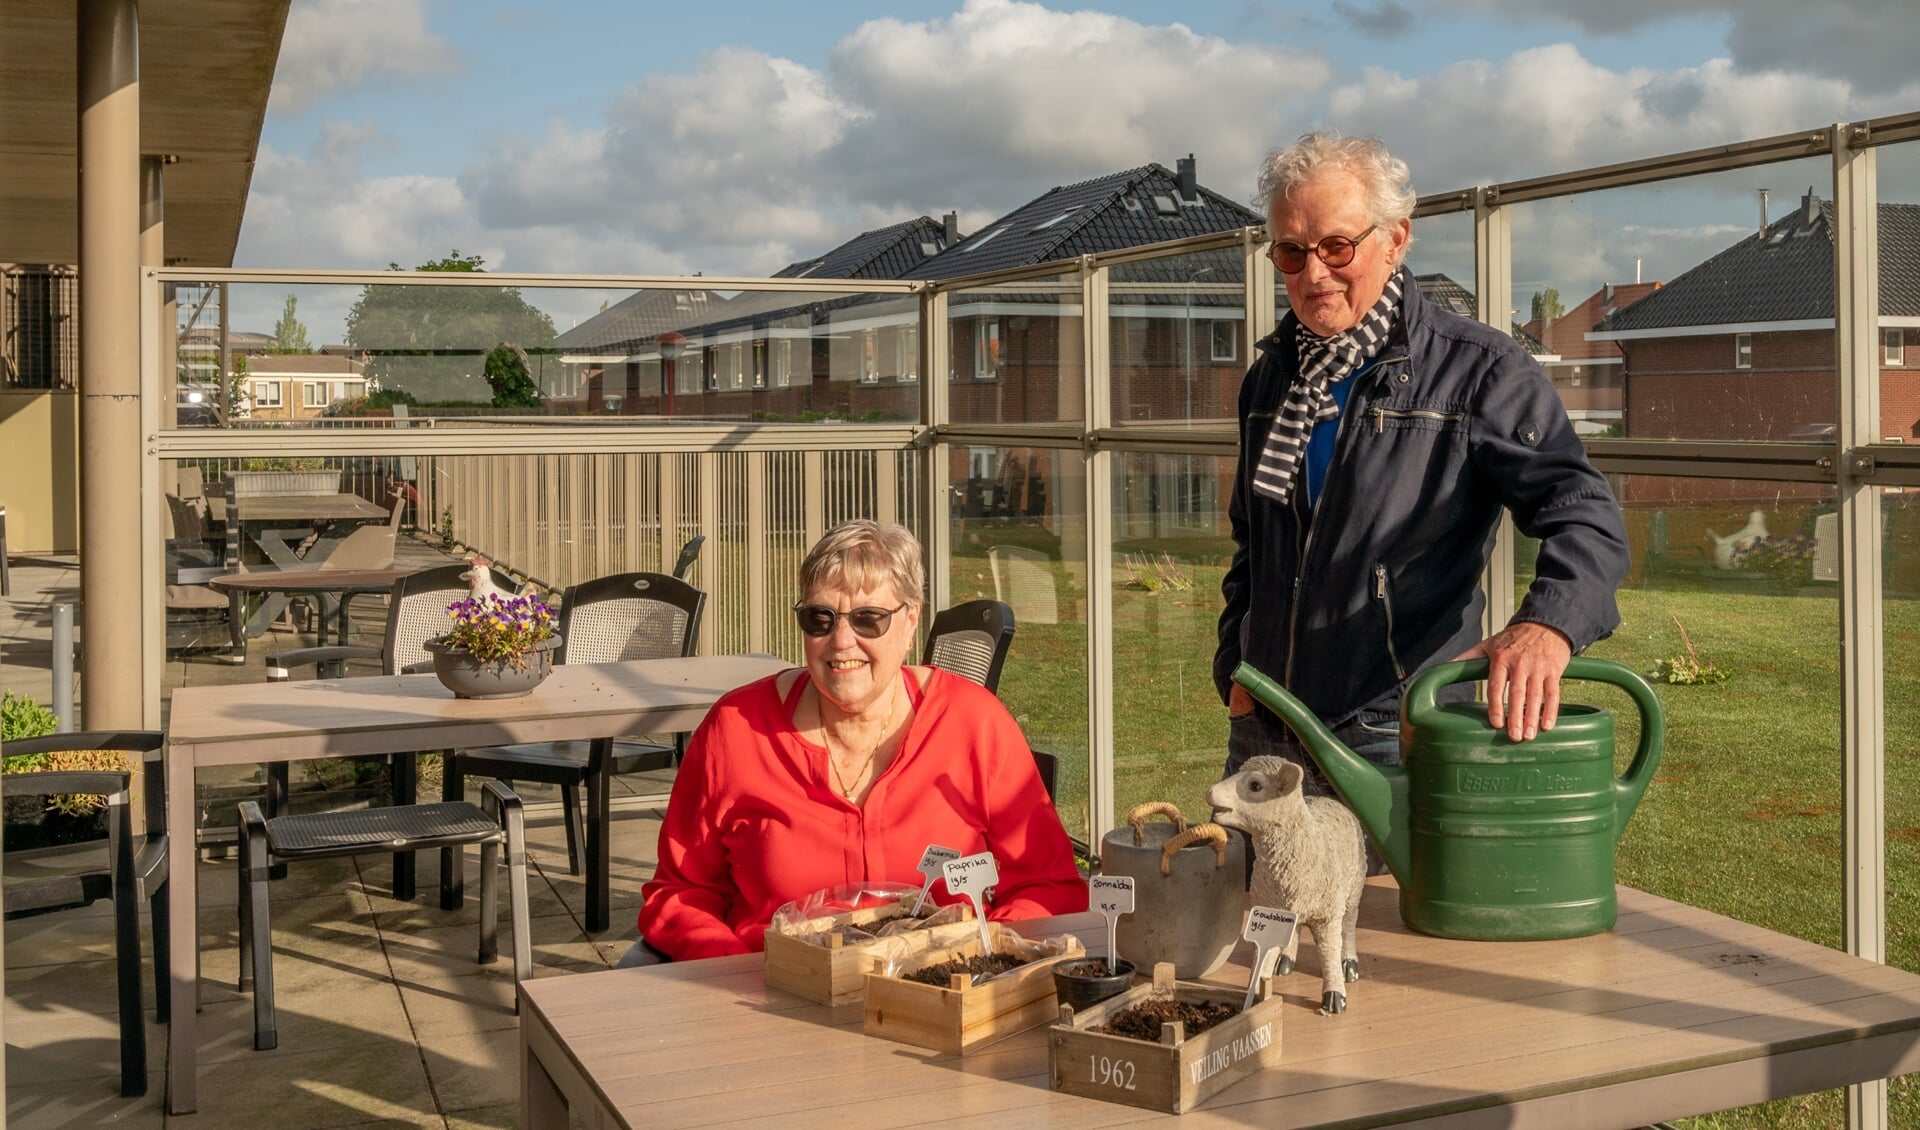 Olga Wendelgelst en Fred Bertrand van Stichting Vrienden Nicolaas, Waterpark en Overvest zamelen geld in voor de belevingsbalkontuin. Helpt u mee?